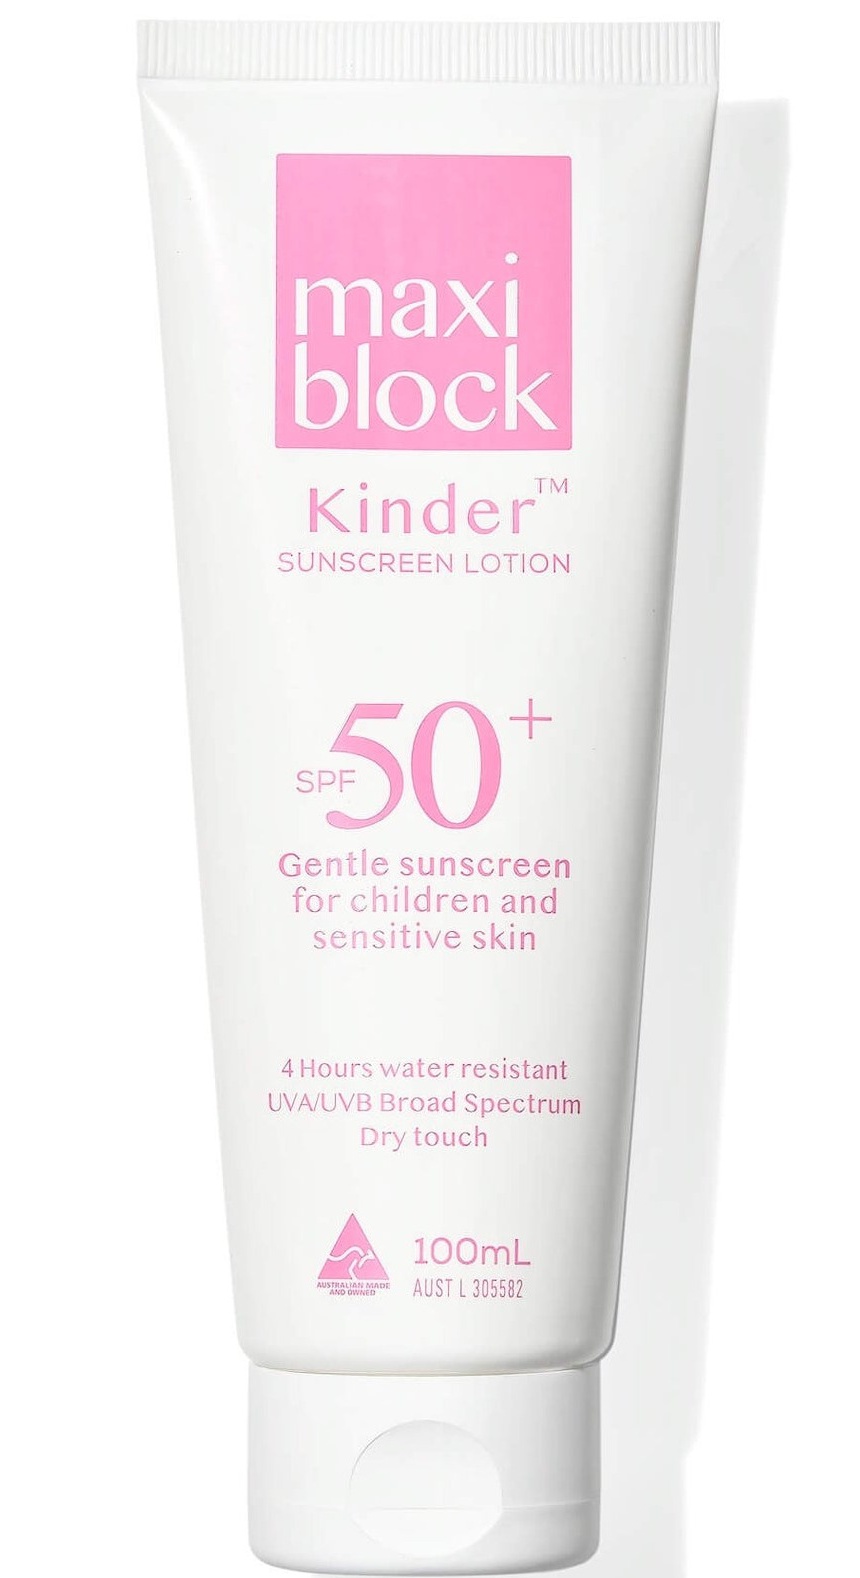 Maxiblock Kinder Sunscreen SPF50+